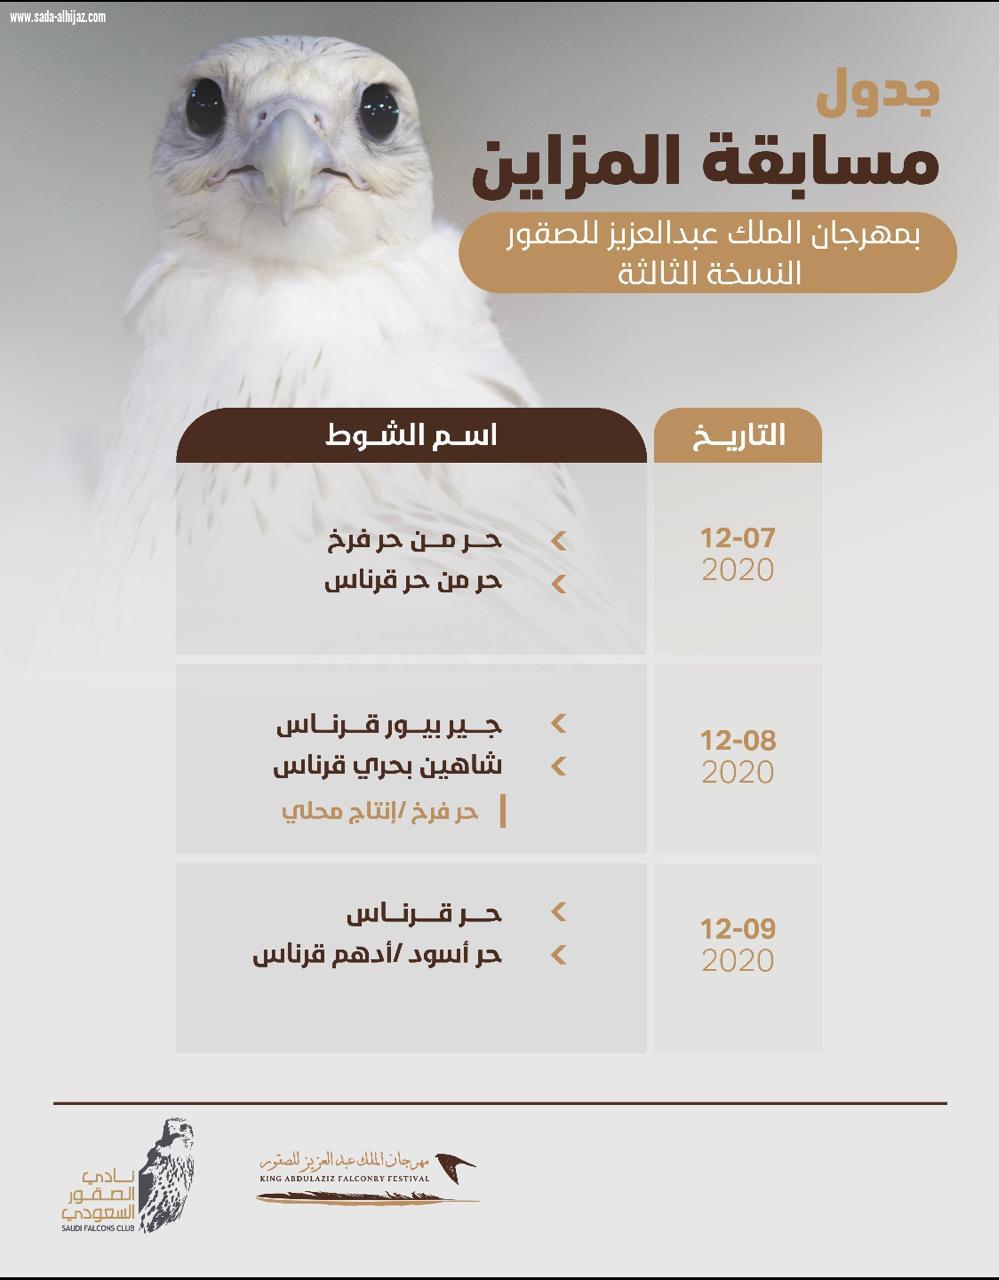 استحداث فئات جديدة لمسابقتي الملواح والمزاين وبدء التسجيل بمسابقات مهرجان الملك عبدالعزيز للصقور في 6 مدن